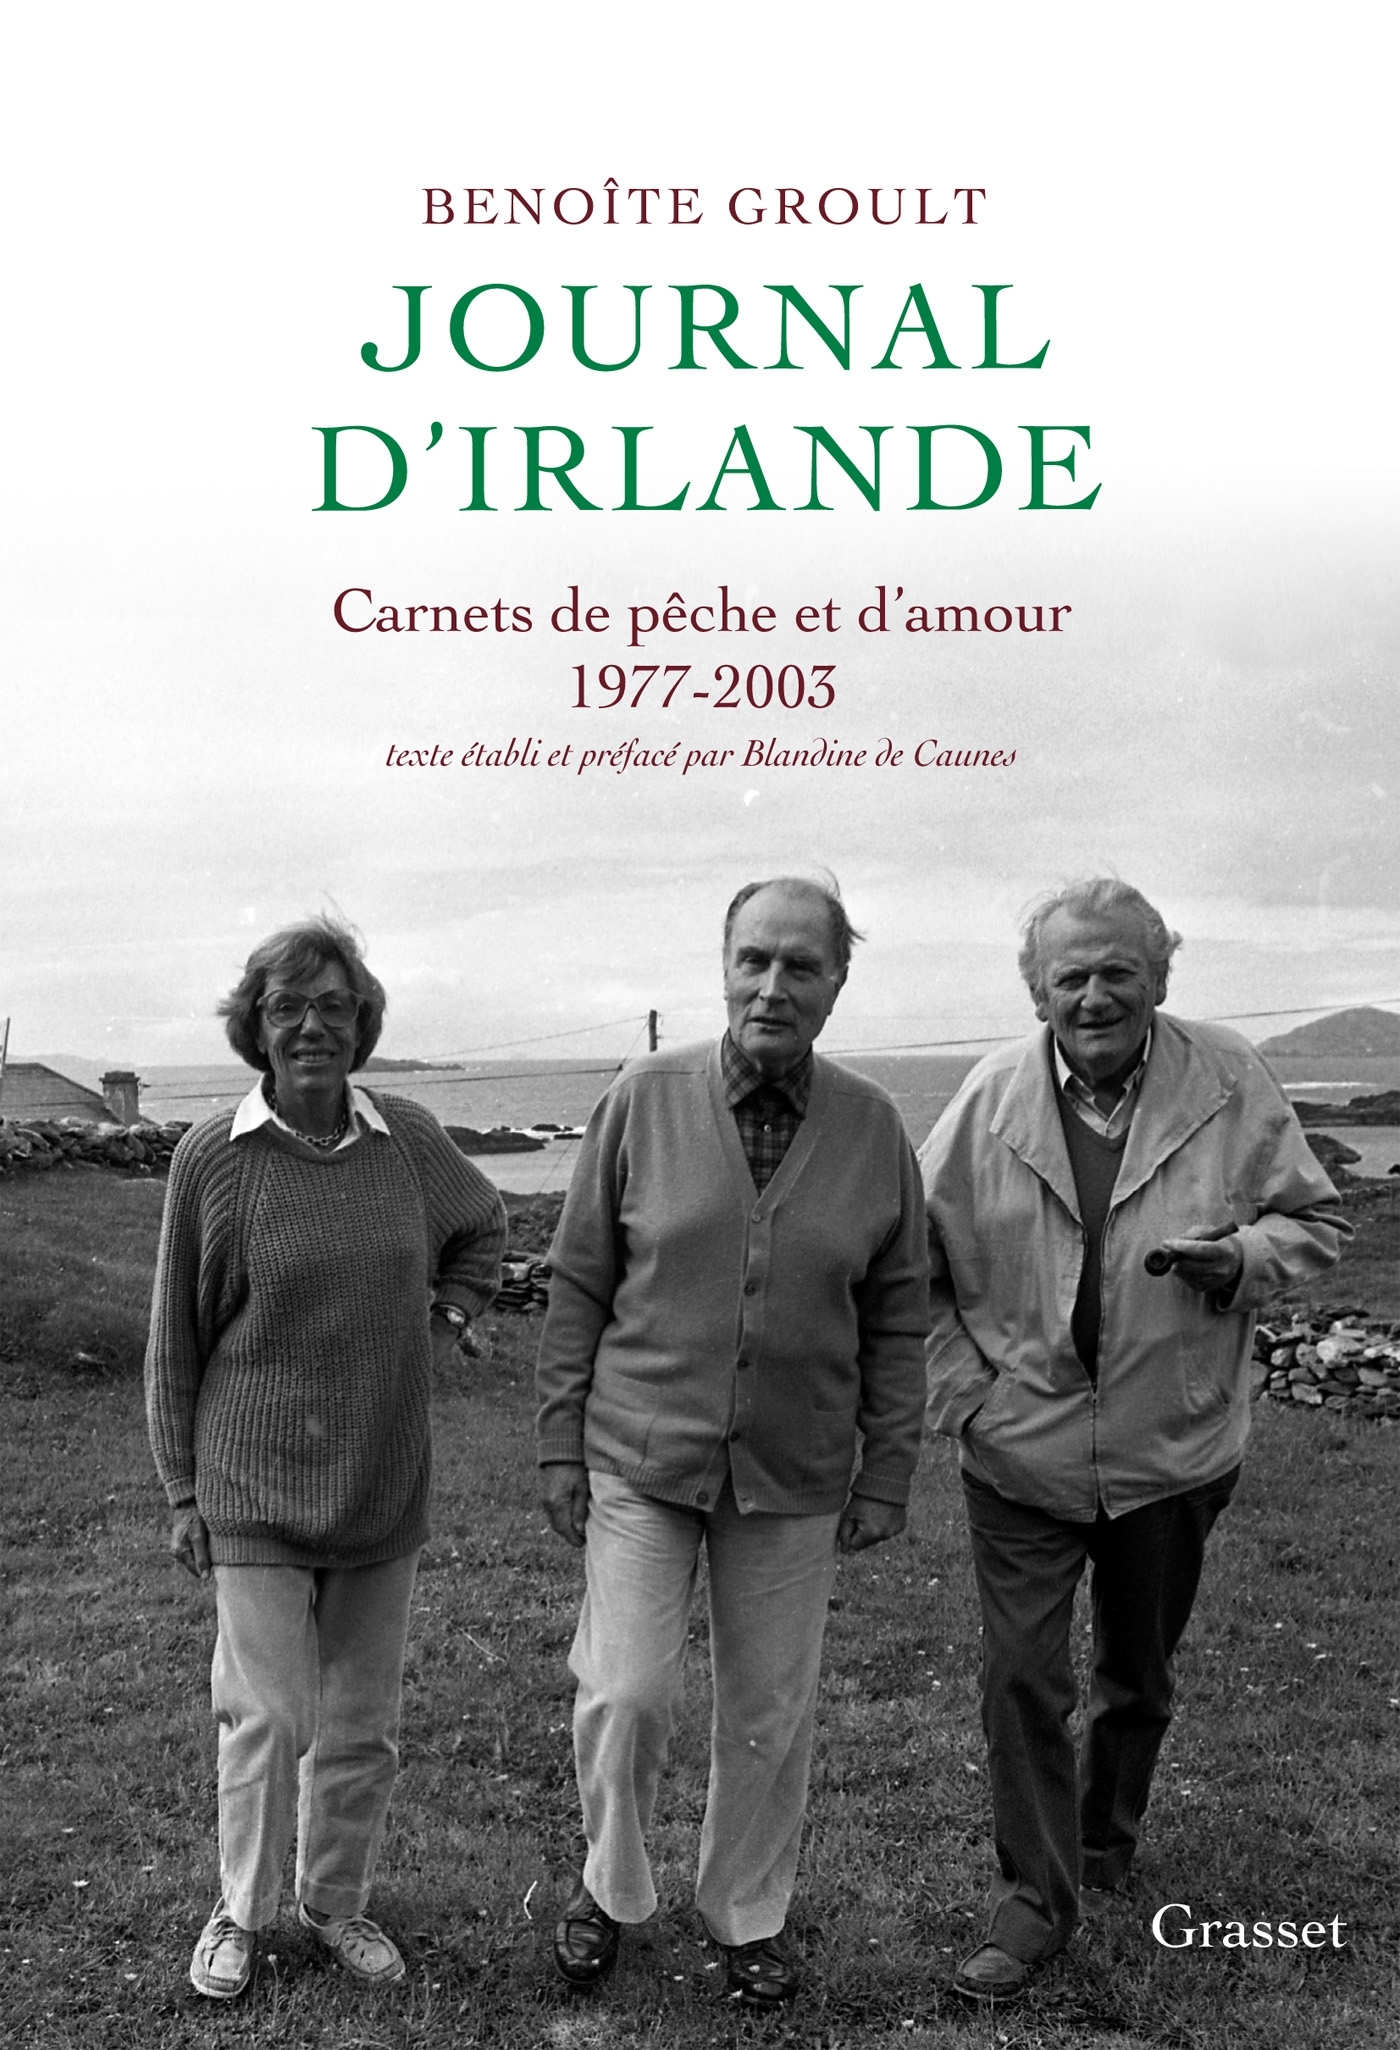 Journal d'Irlande, Carnets de pêche et d'amour - Texte établi et préfacé par Blandine de Caunes. (9782246816874-front-cover)